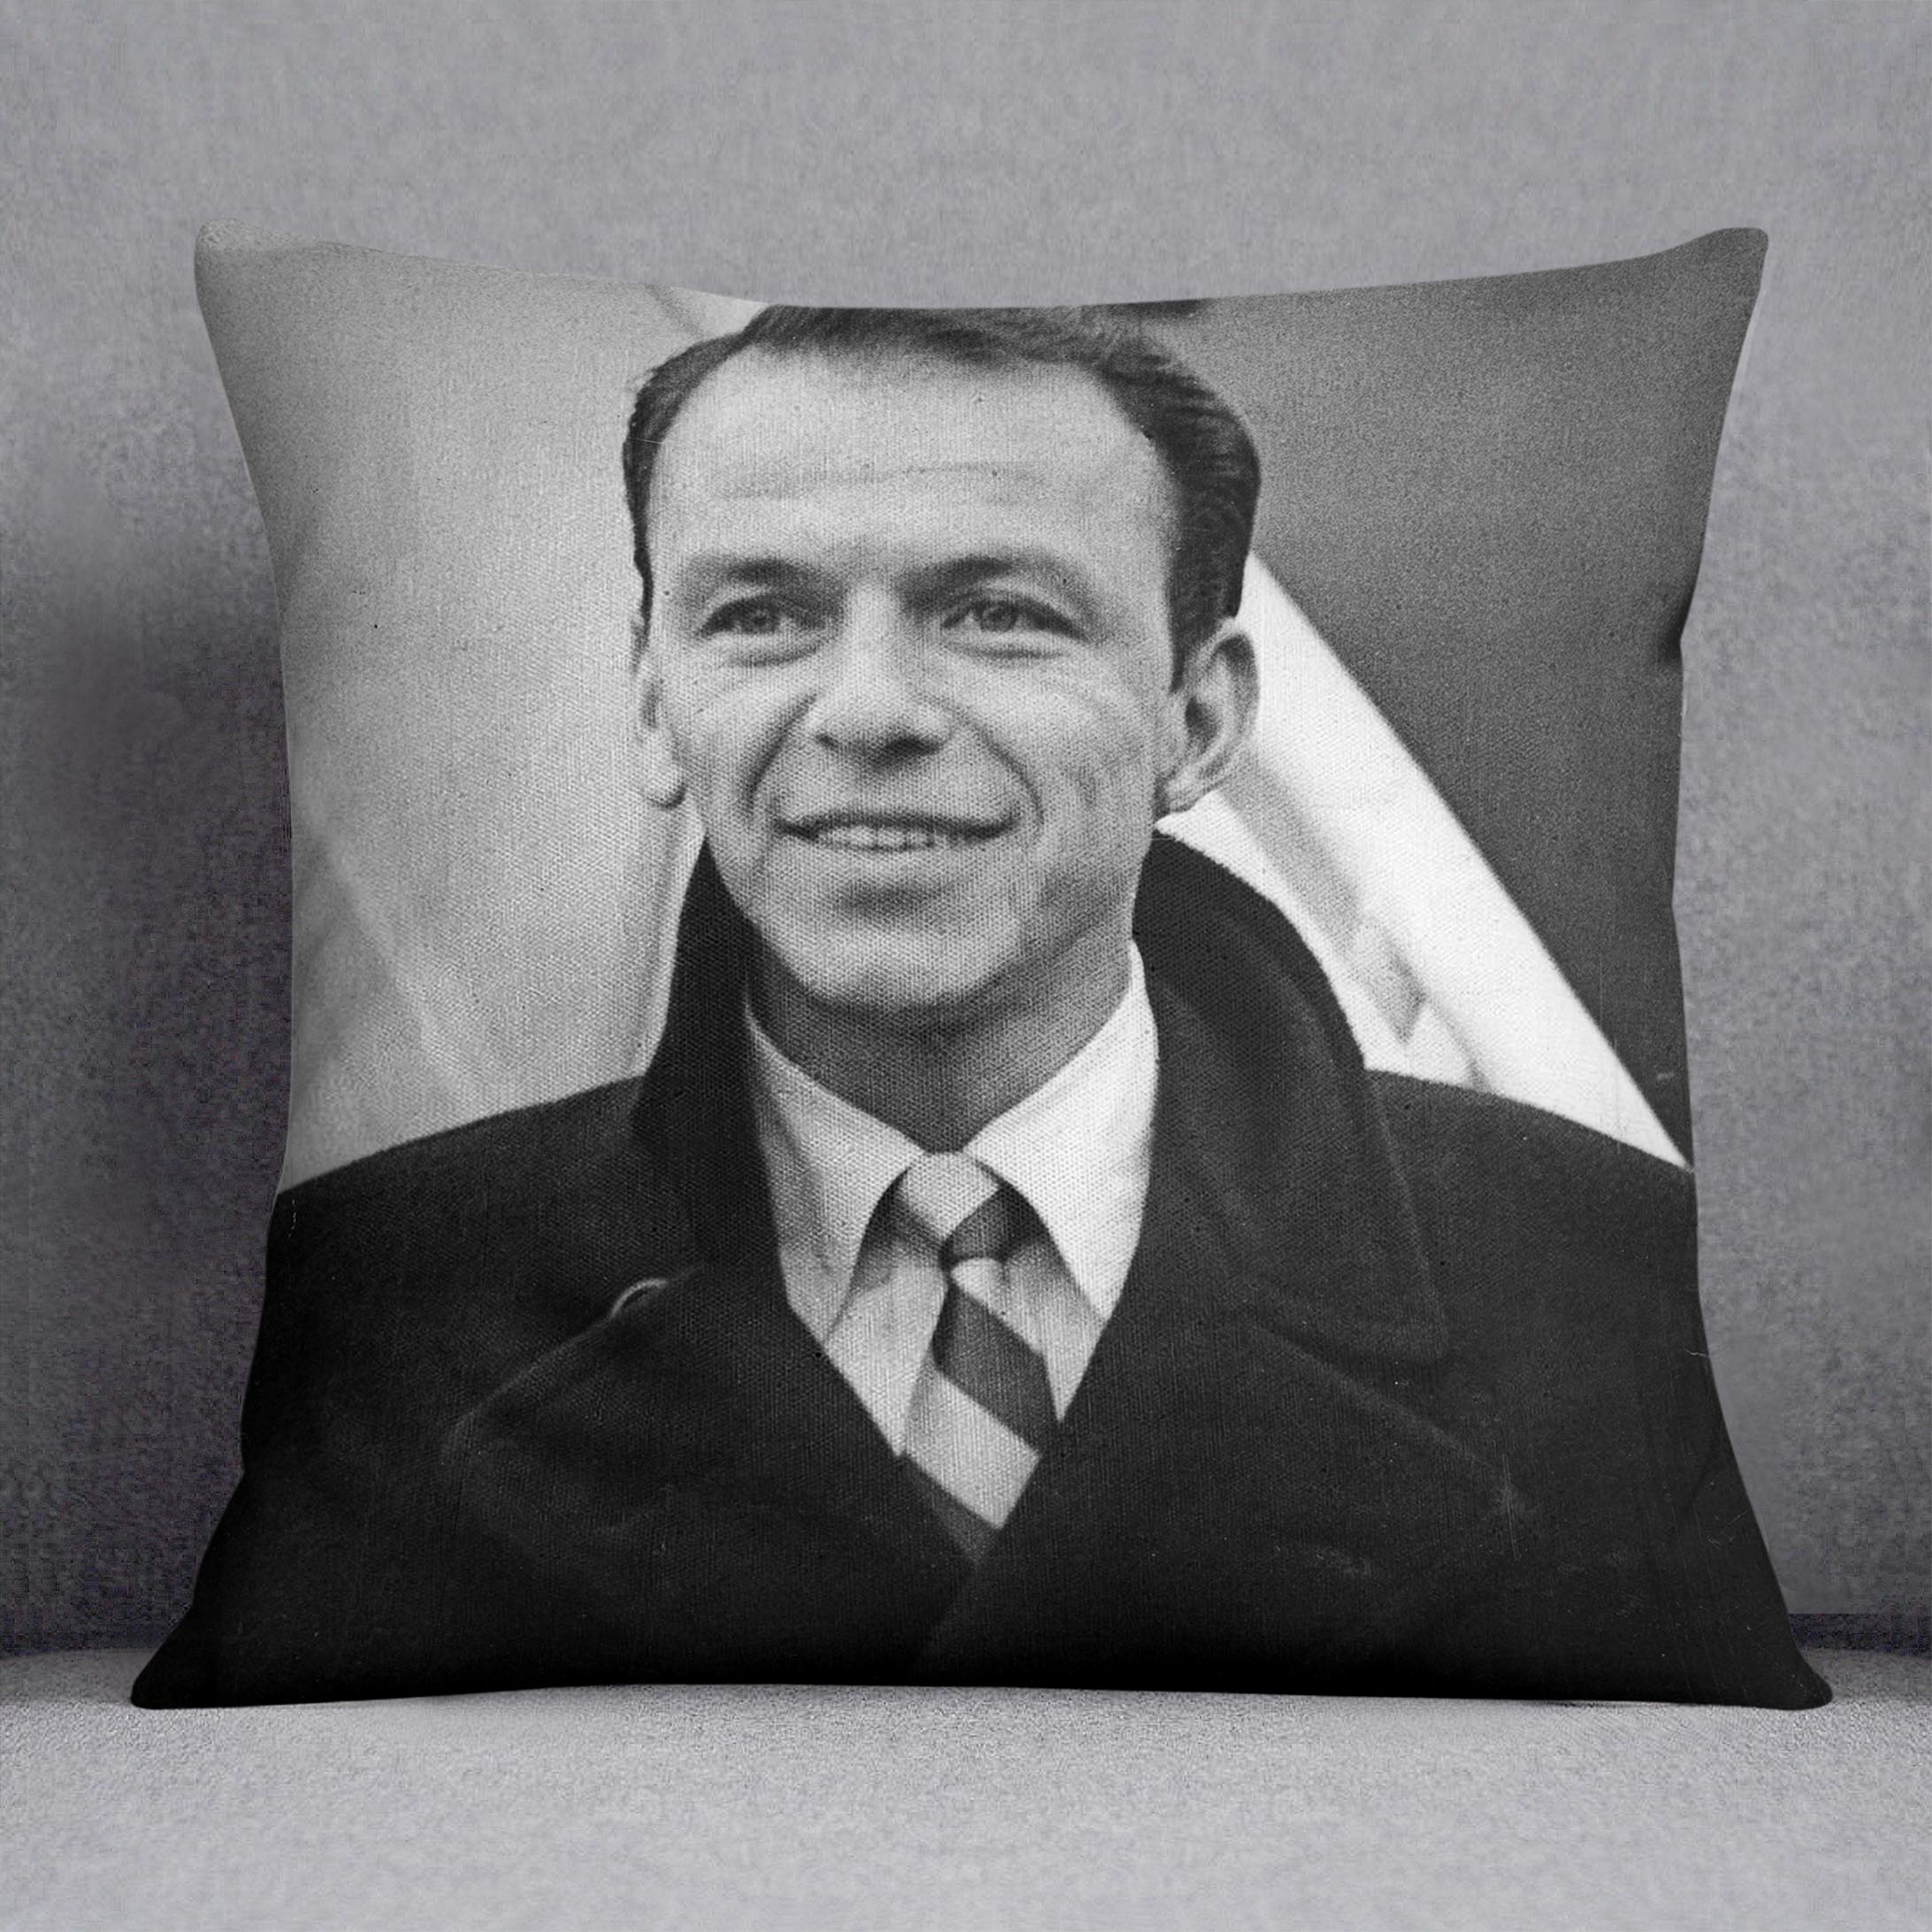 Frank Sinatra at airport Cushion